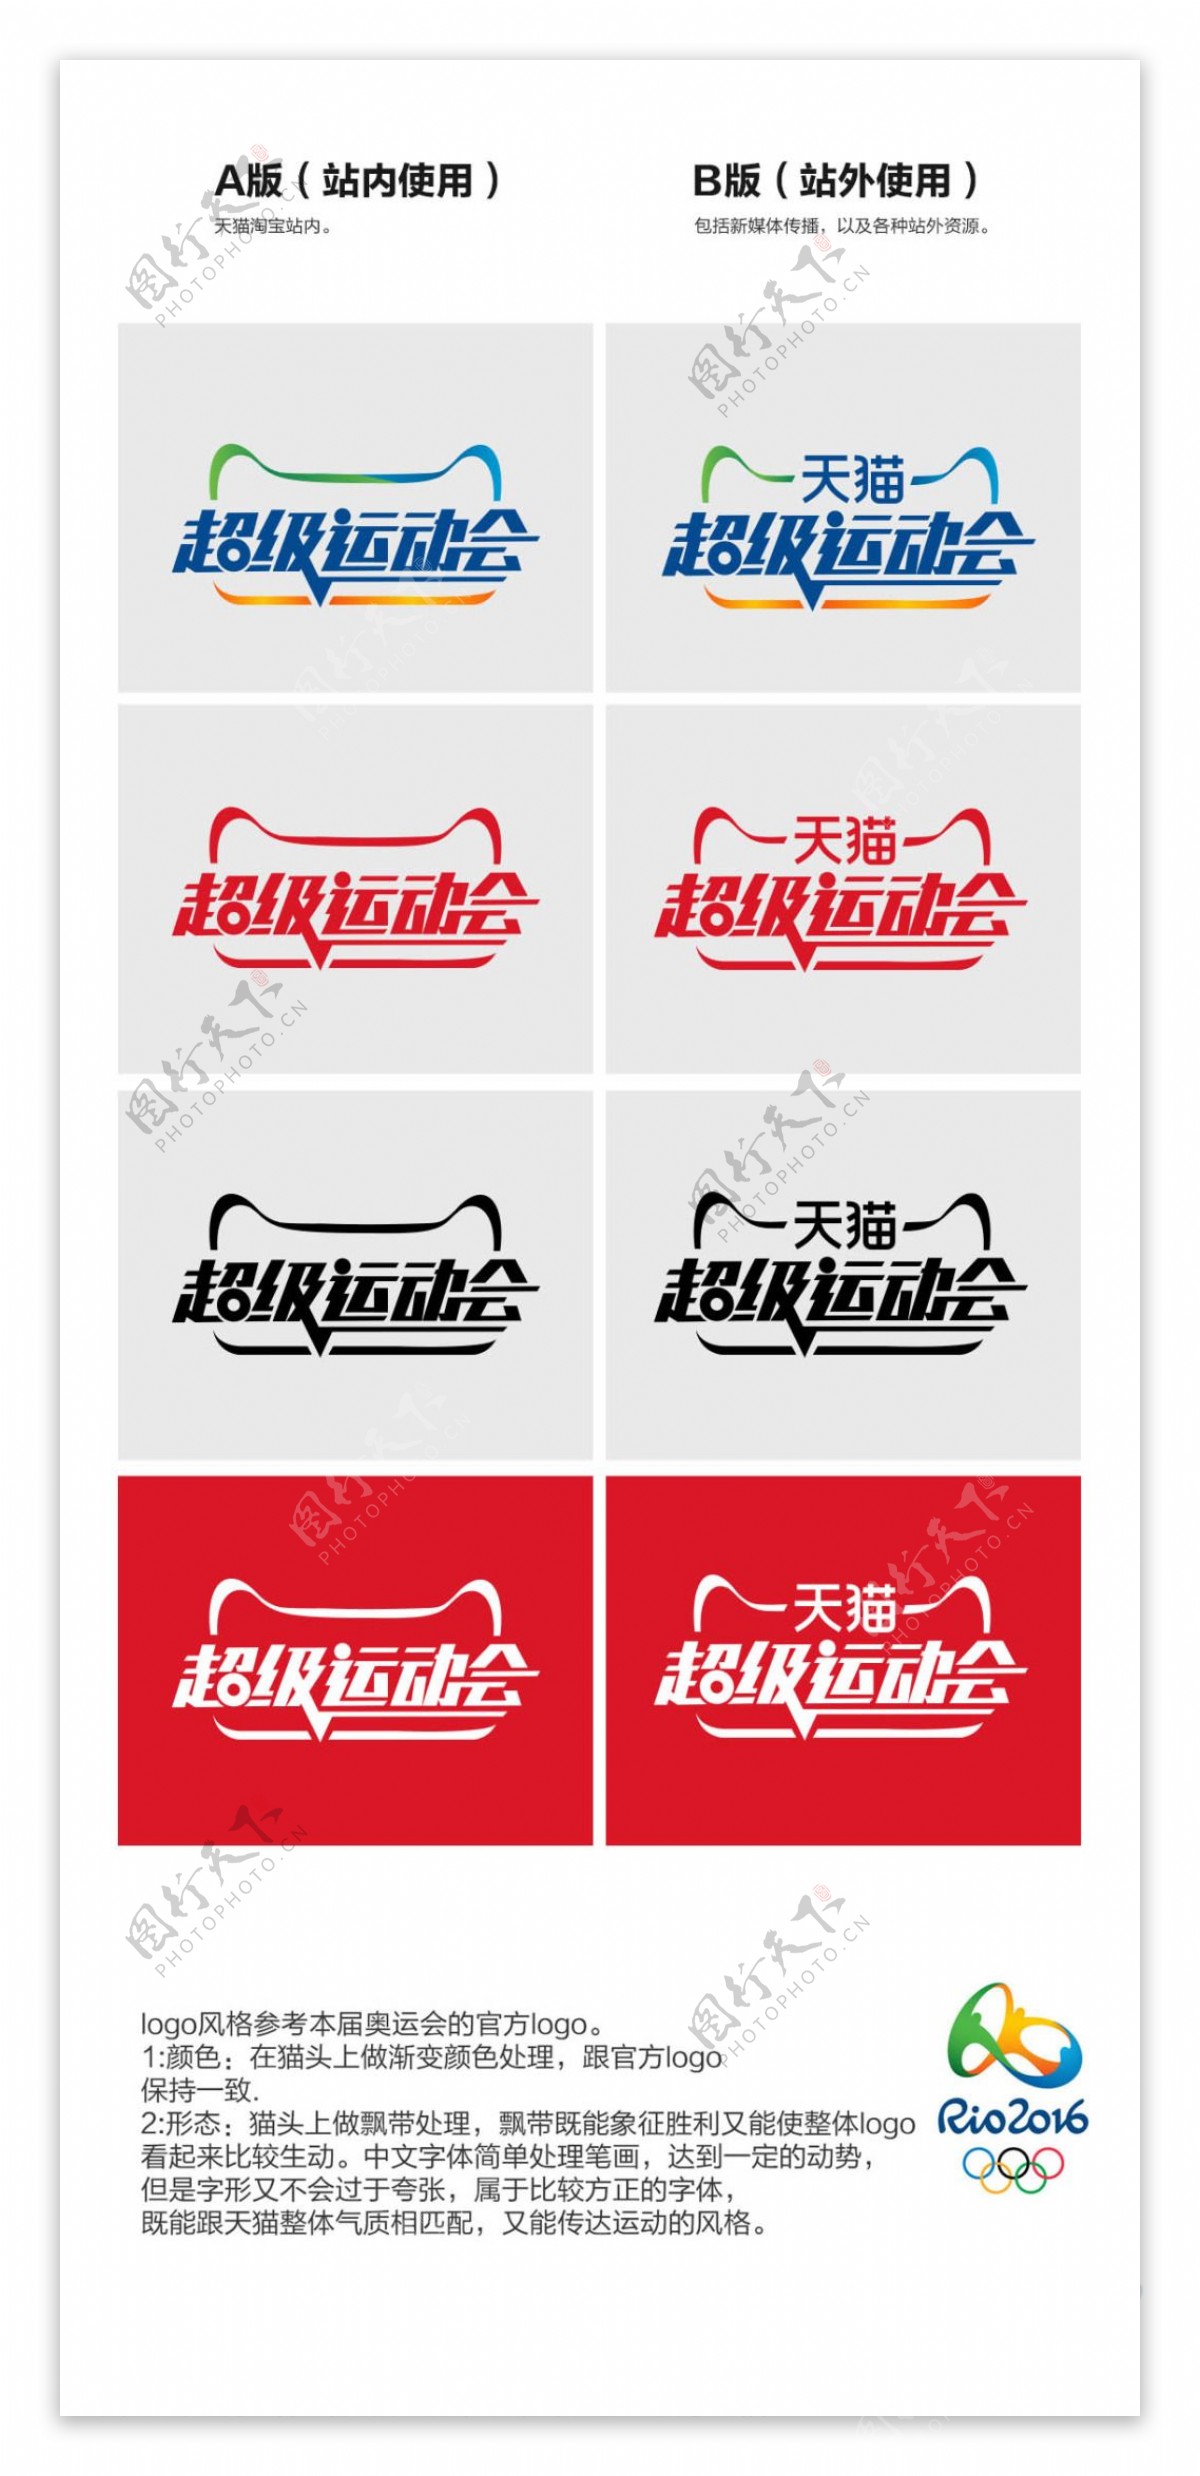 2016天猫超级运动会logo图标